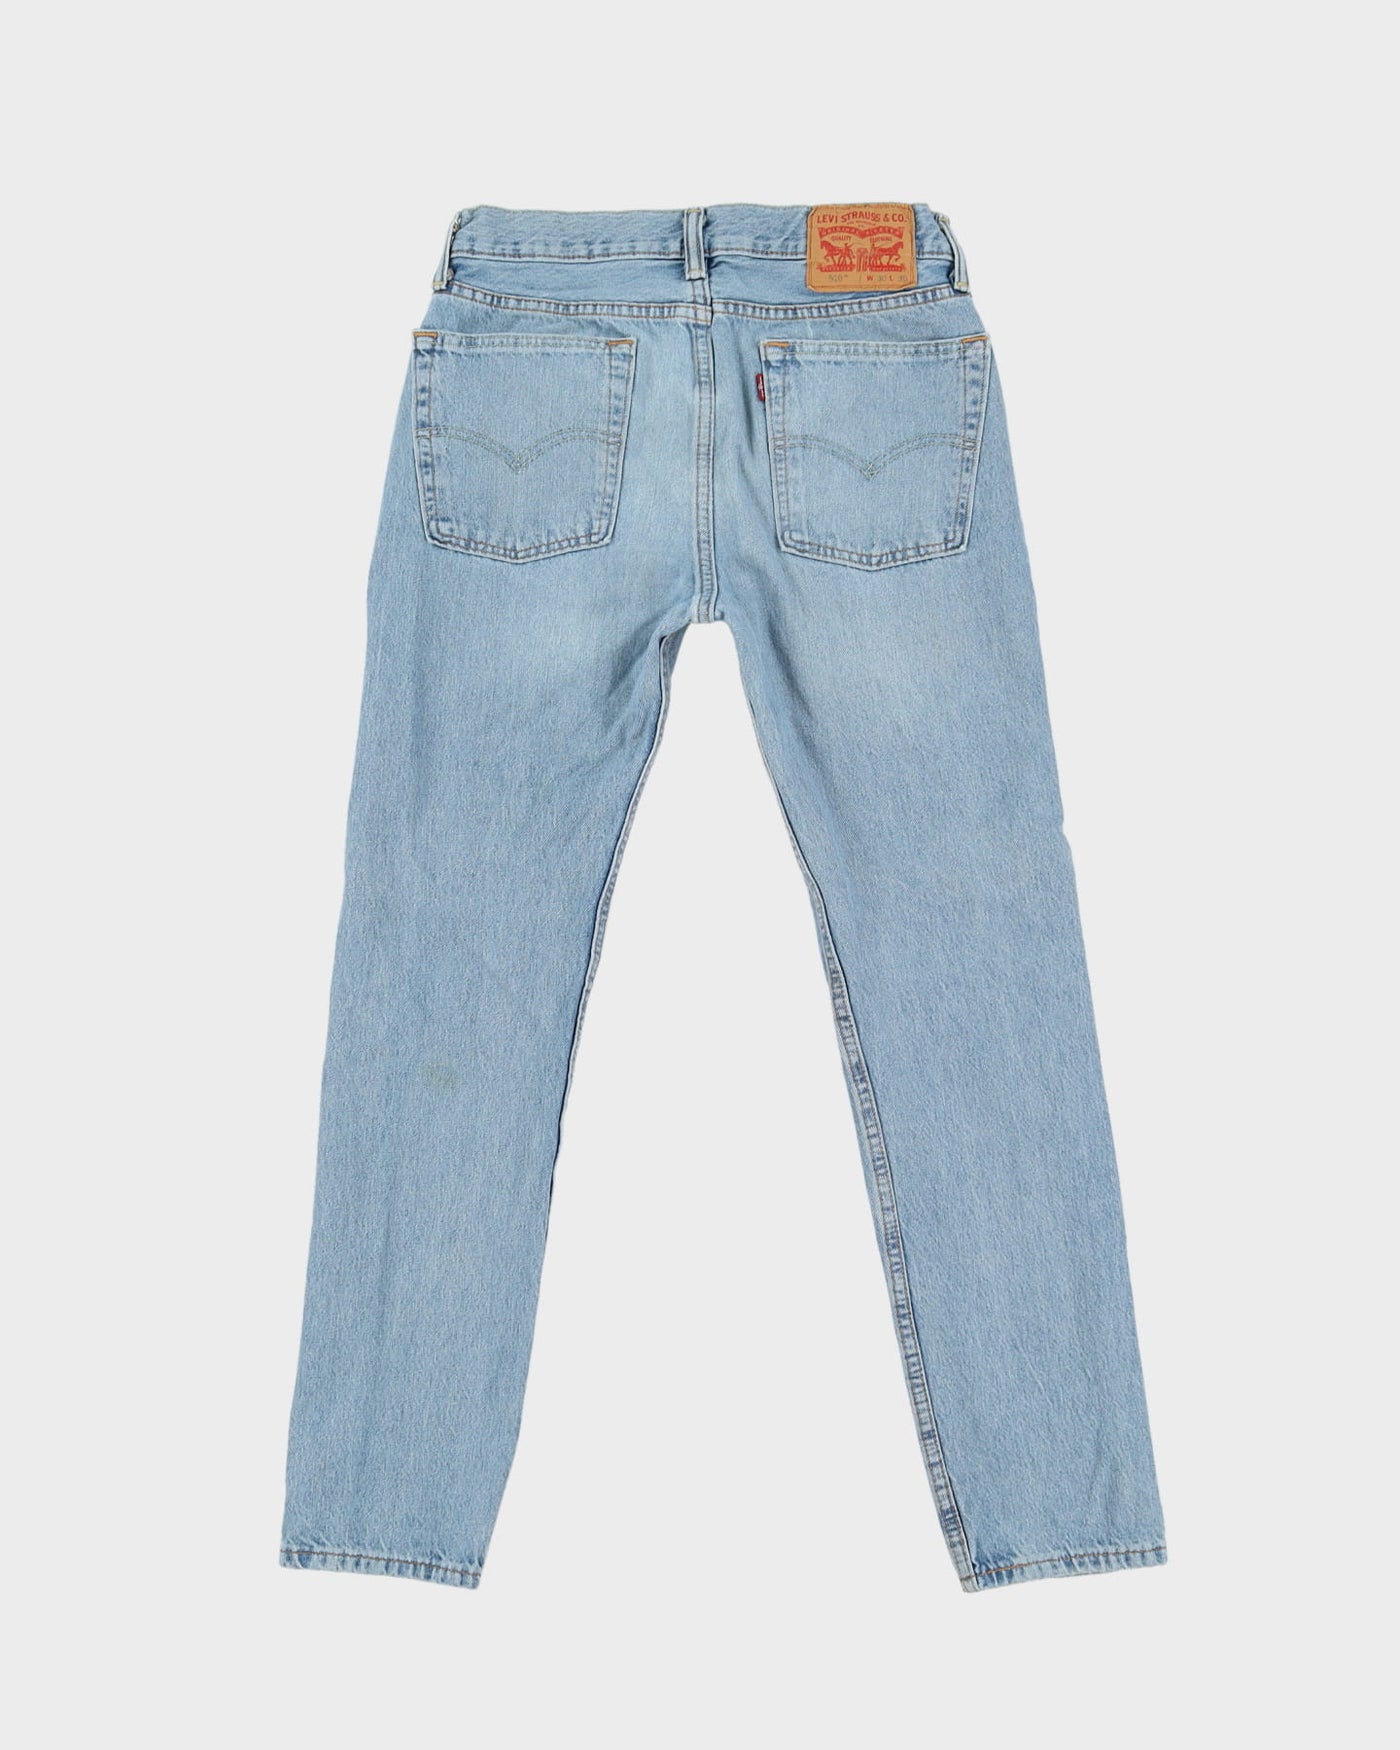 Levi's 501 Blue Light Wash Jeans - W29 L29